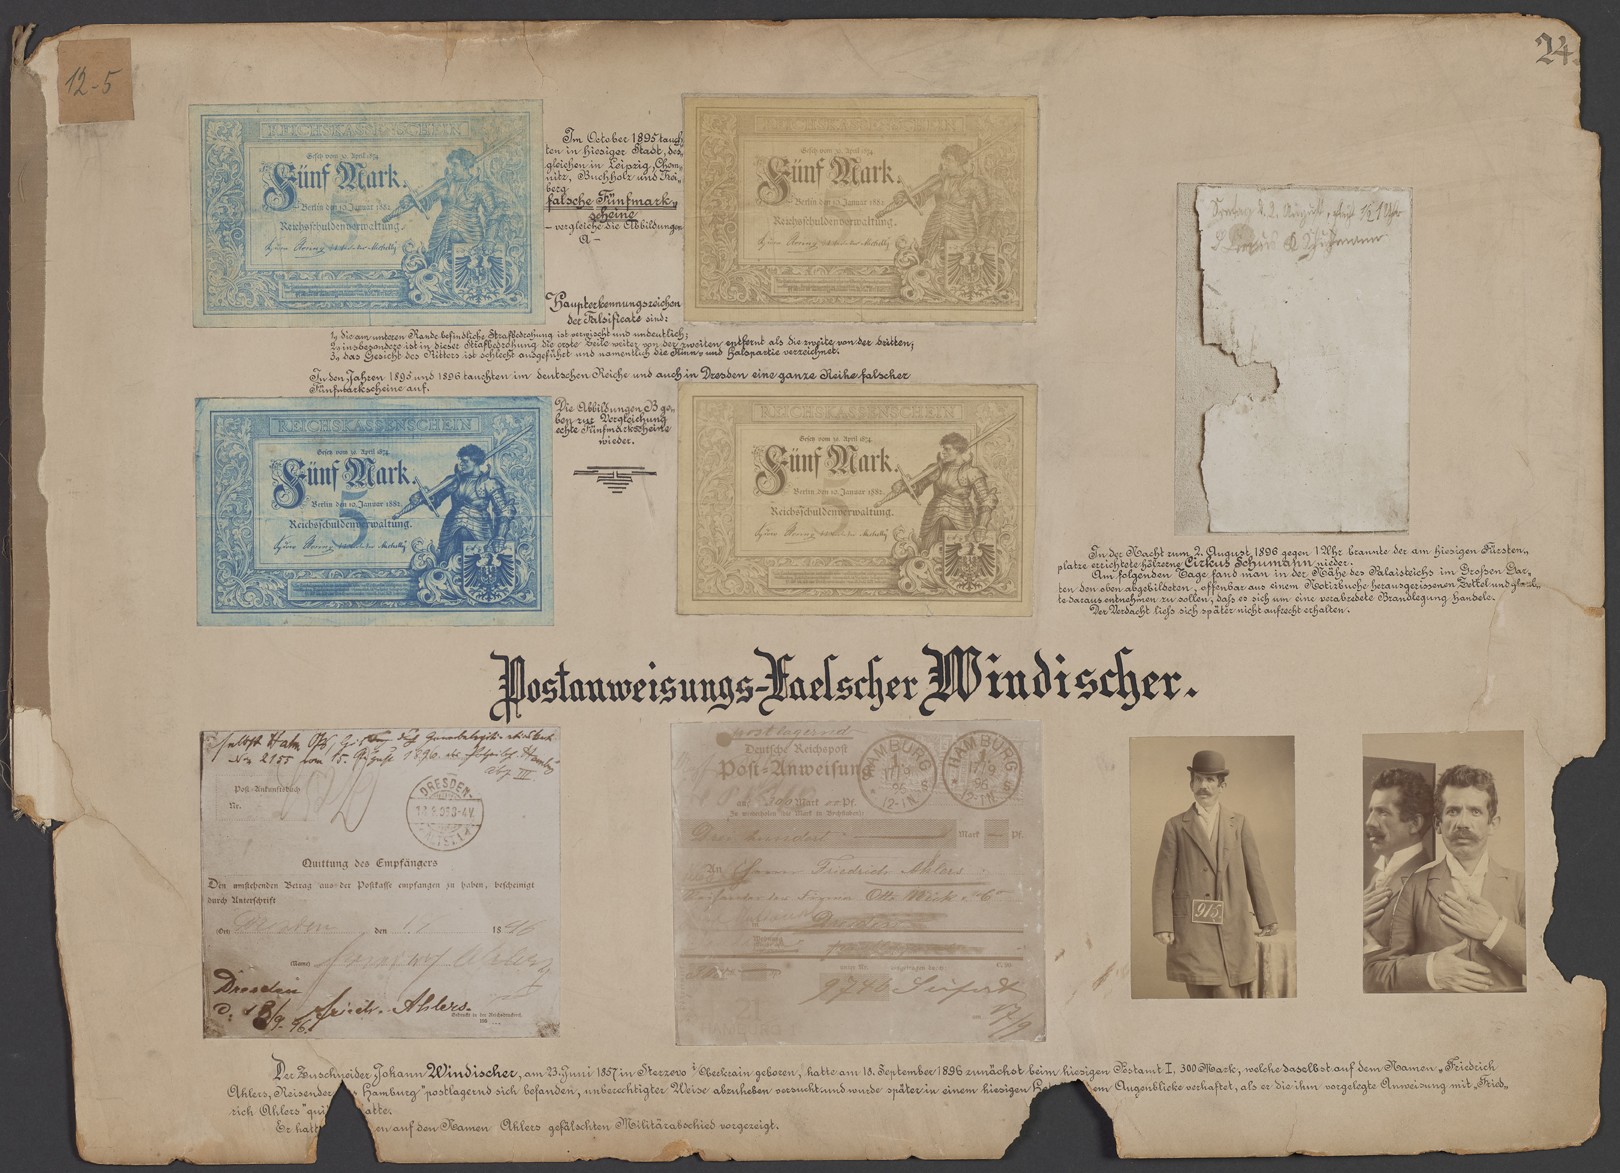 Lehrtafel "Postanweisungs-Fälscher Windischer" mit Rückseite "Fälschungen von Reichspostmarken" (Polizeidirektion Dresden RR-F)